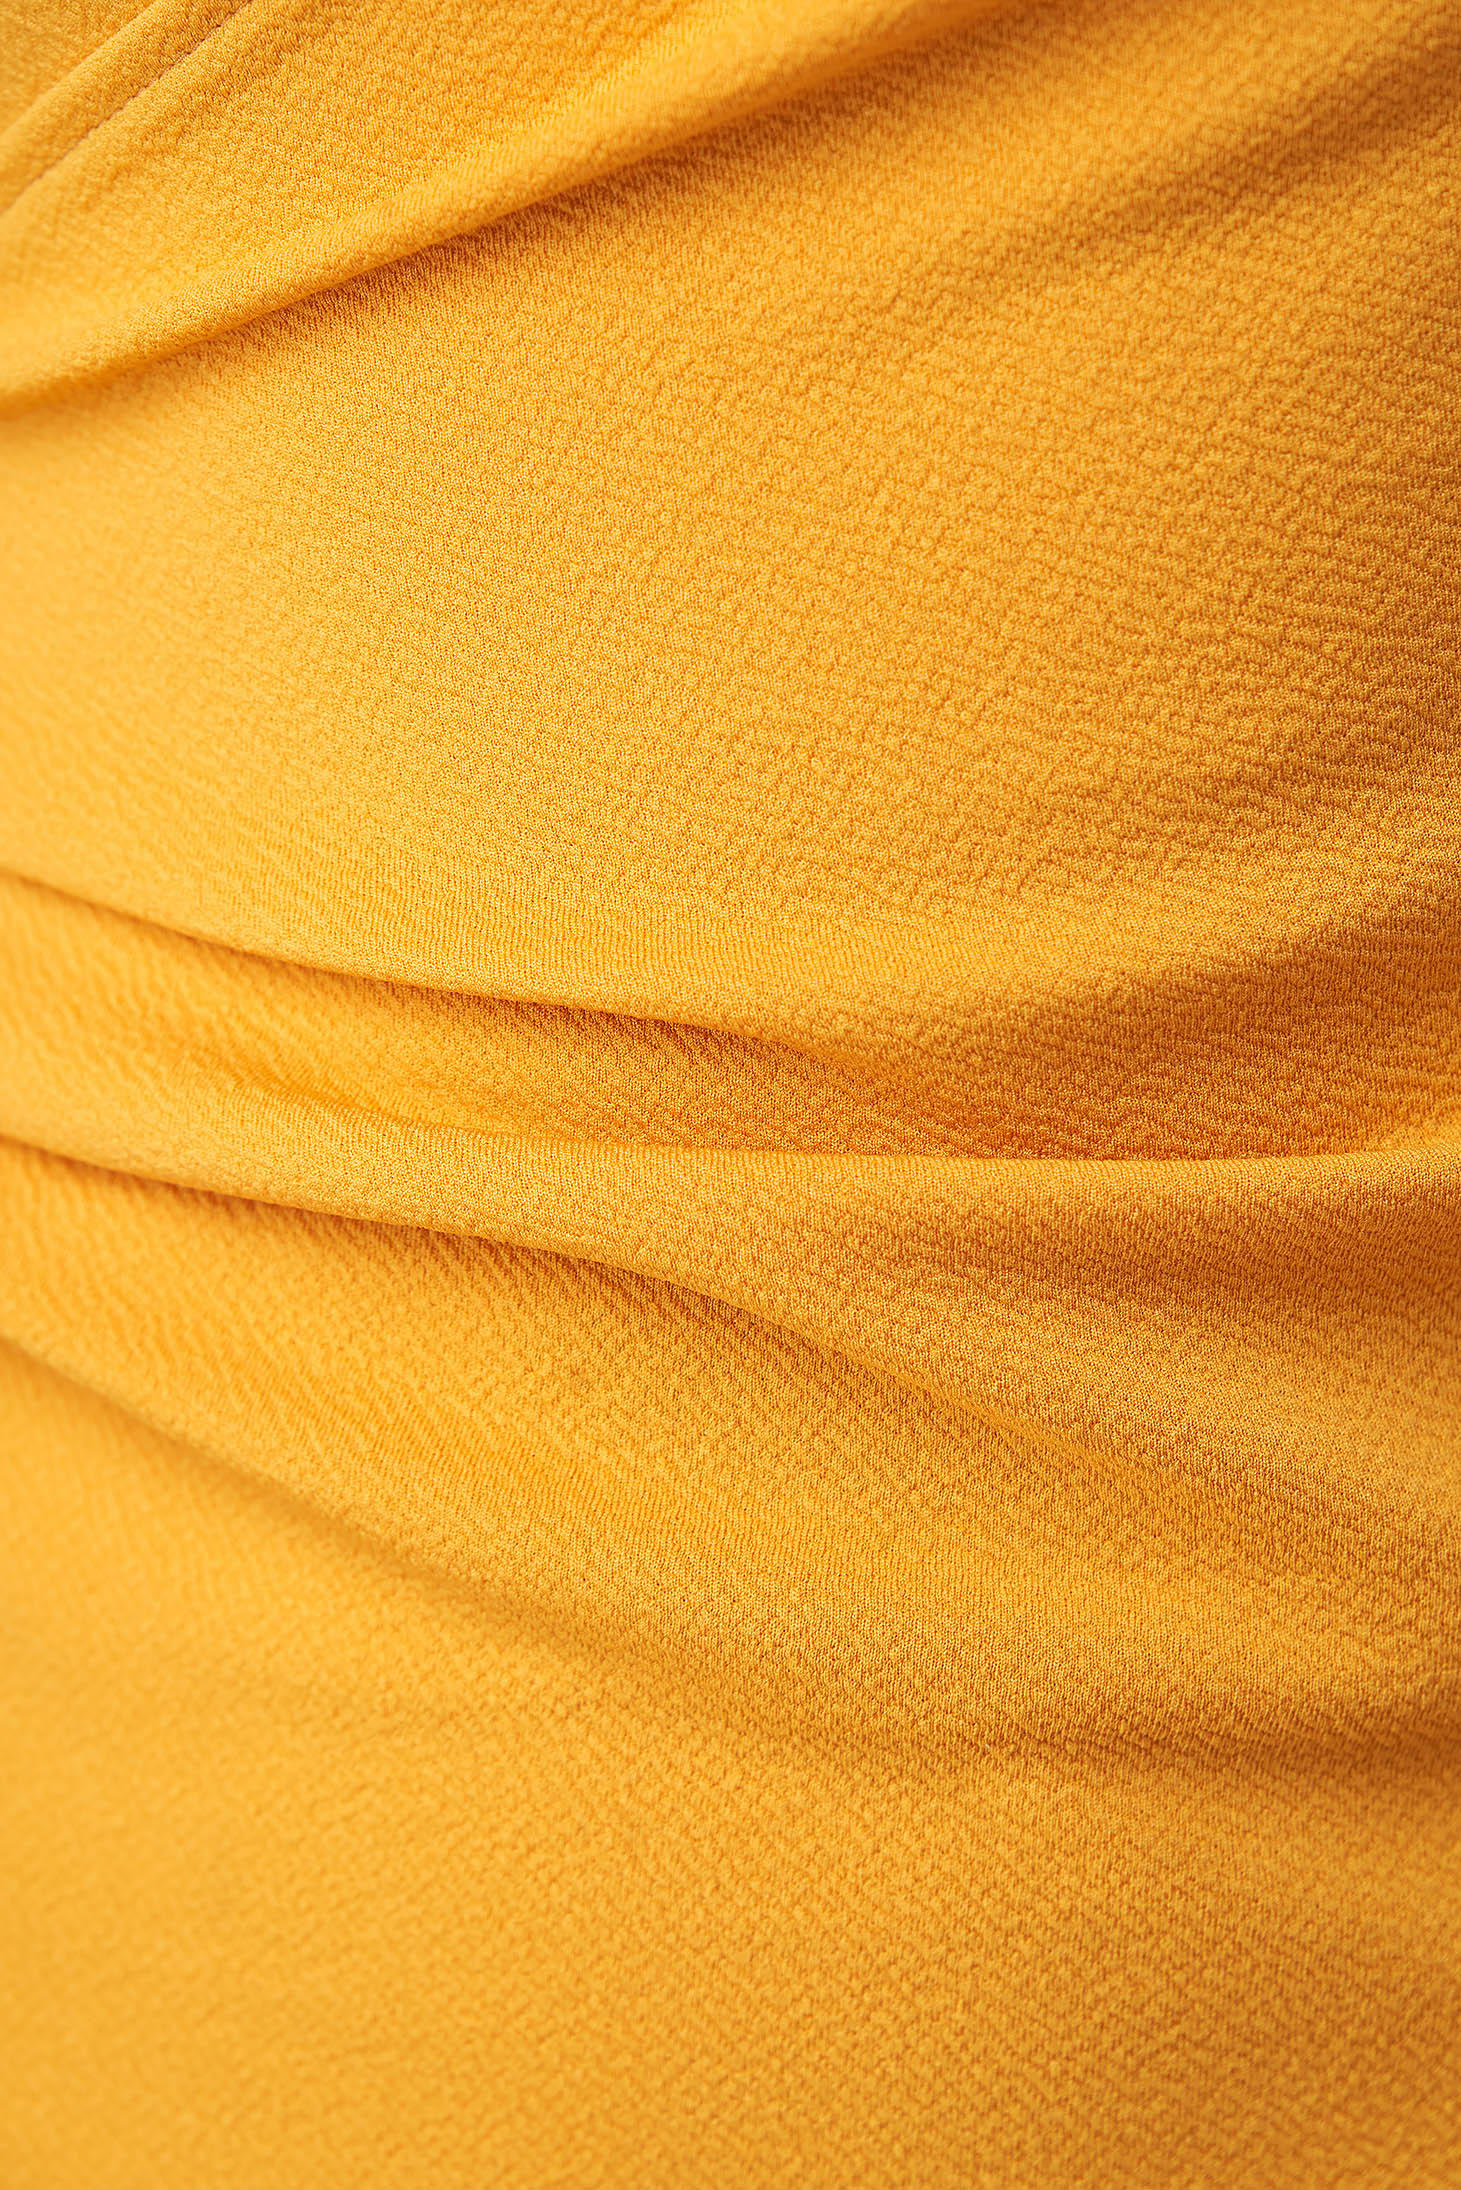 Midi ceruza texturált krepp ruha - mustársárga, átlapolt dekoltázzsal - StarShinerS 6 - StarShinerS.hu